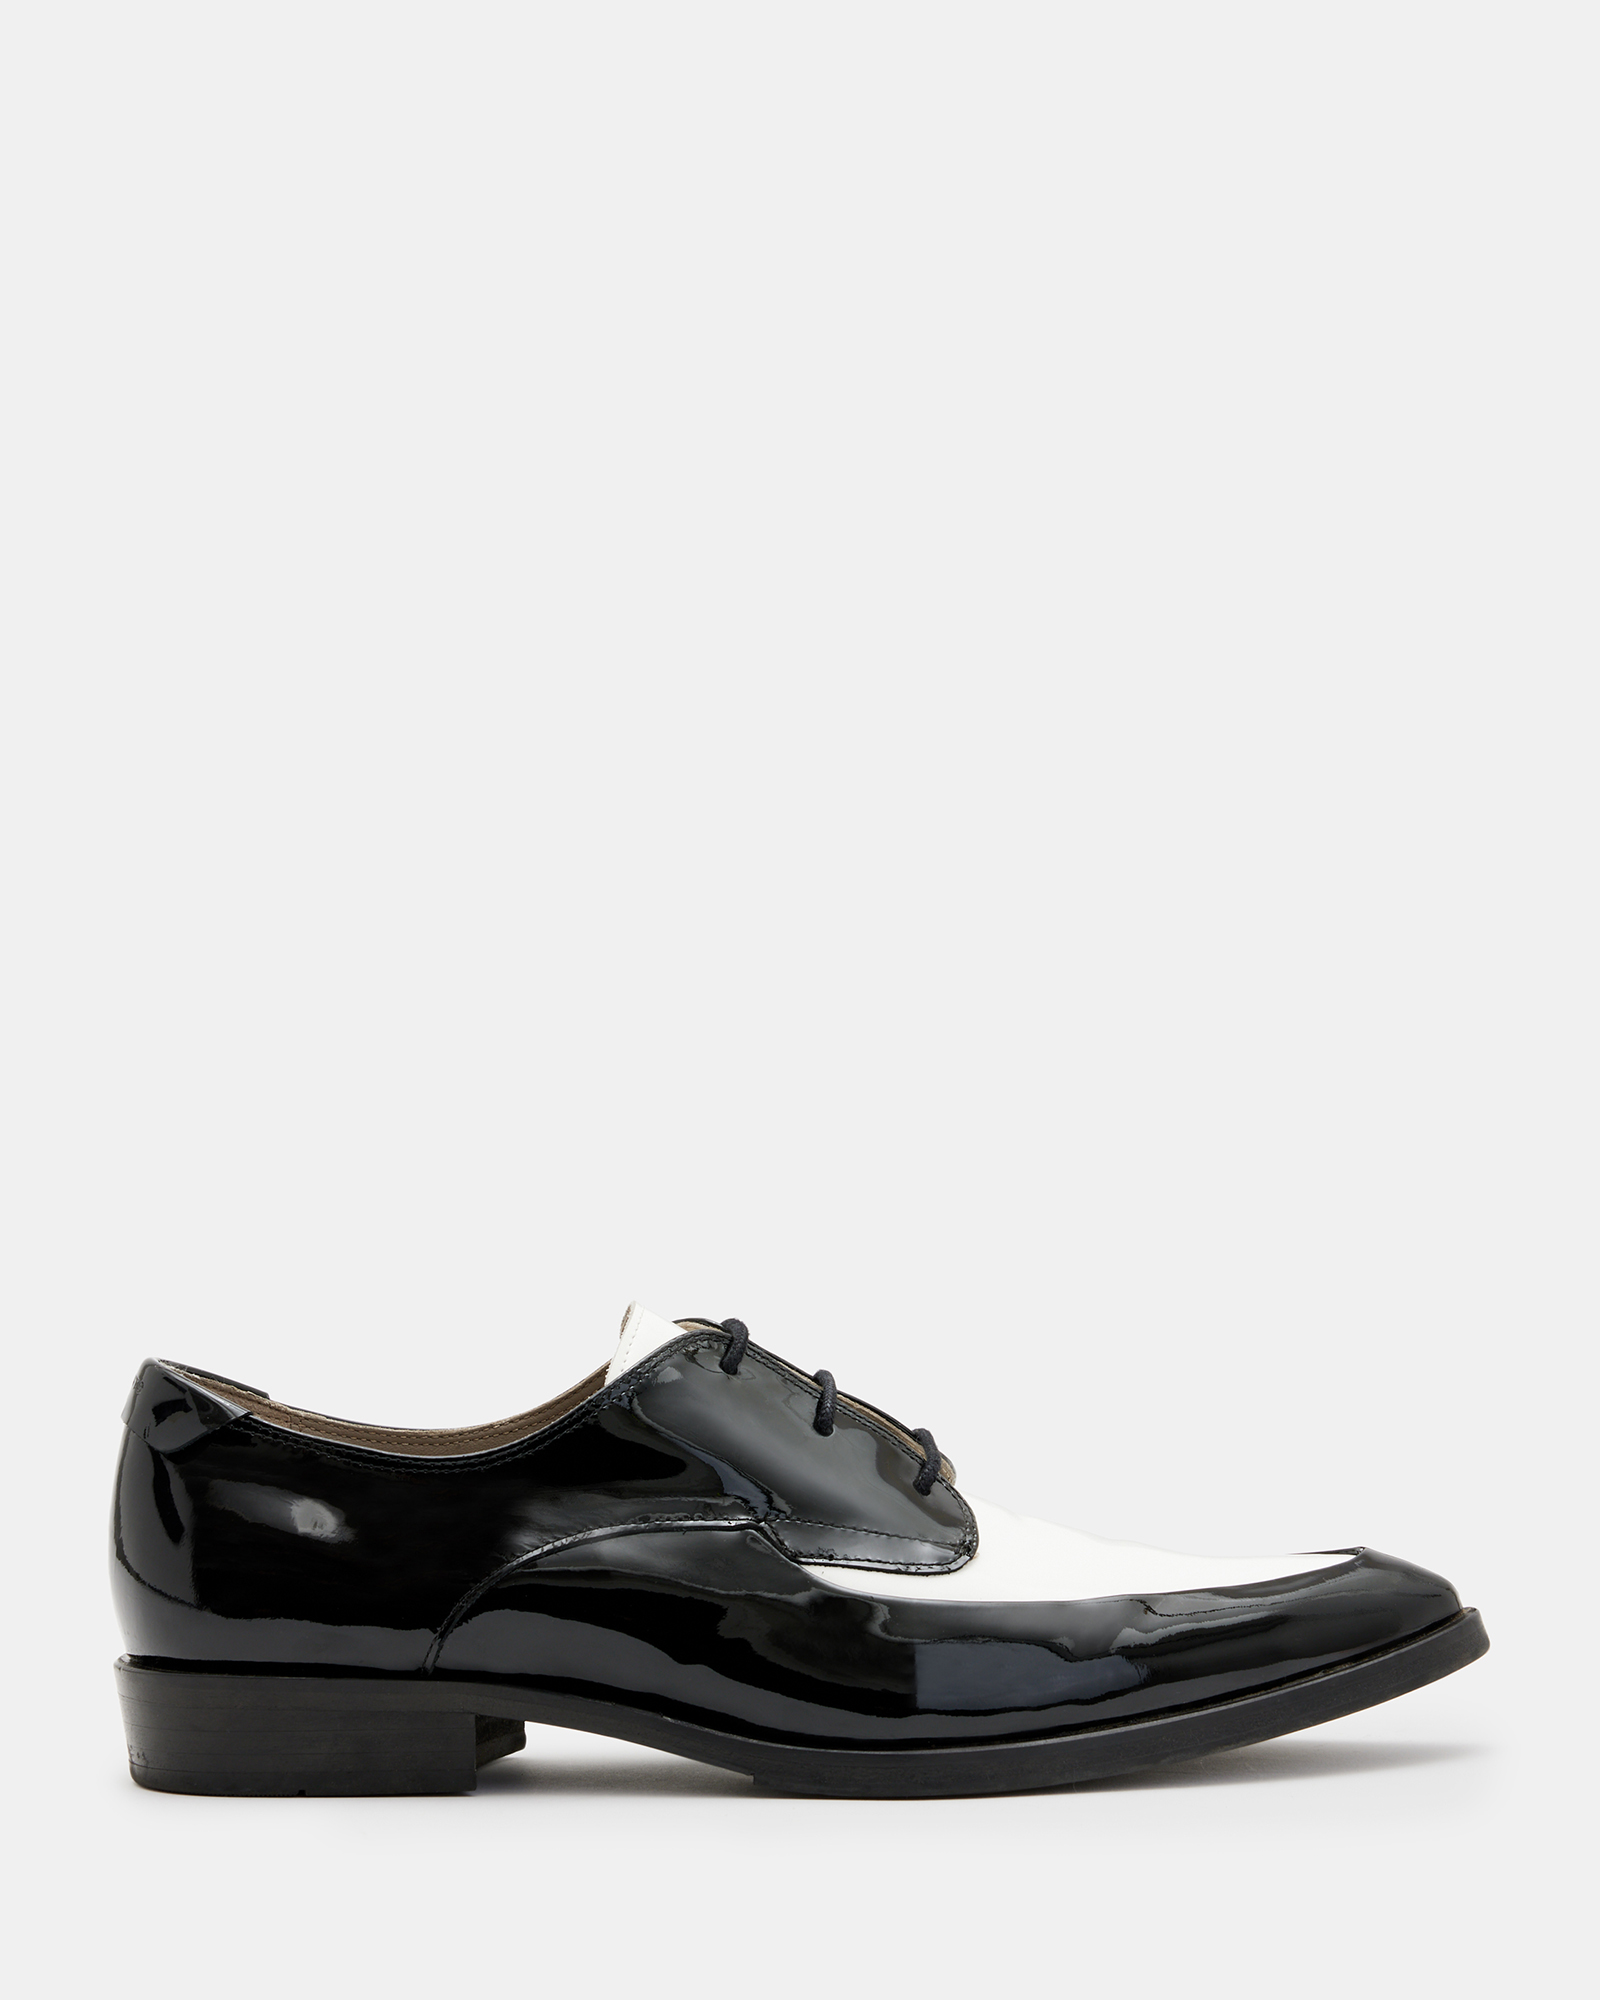 Lex Patent Leather Lace Up Shoes Black/White | ALLSAINTS Canada